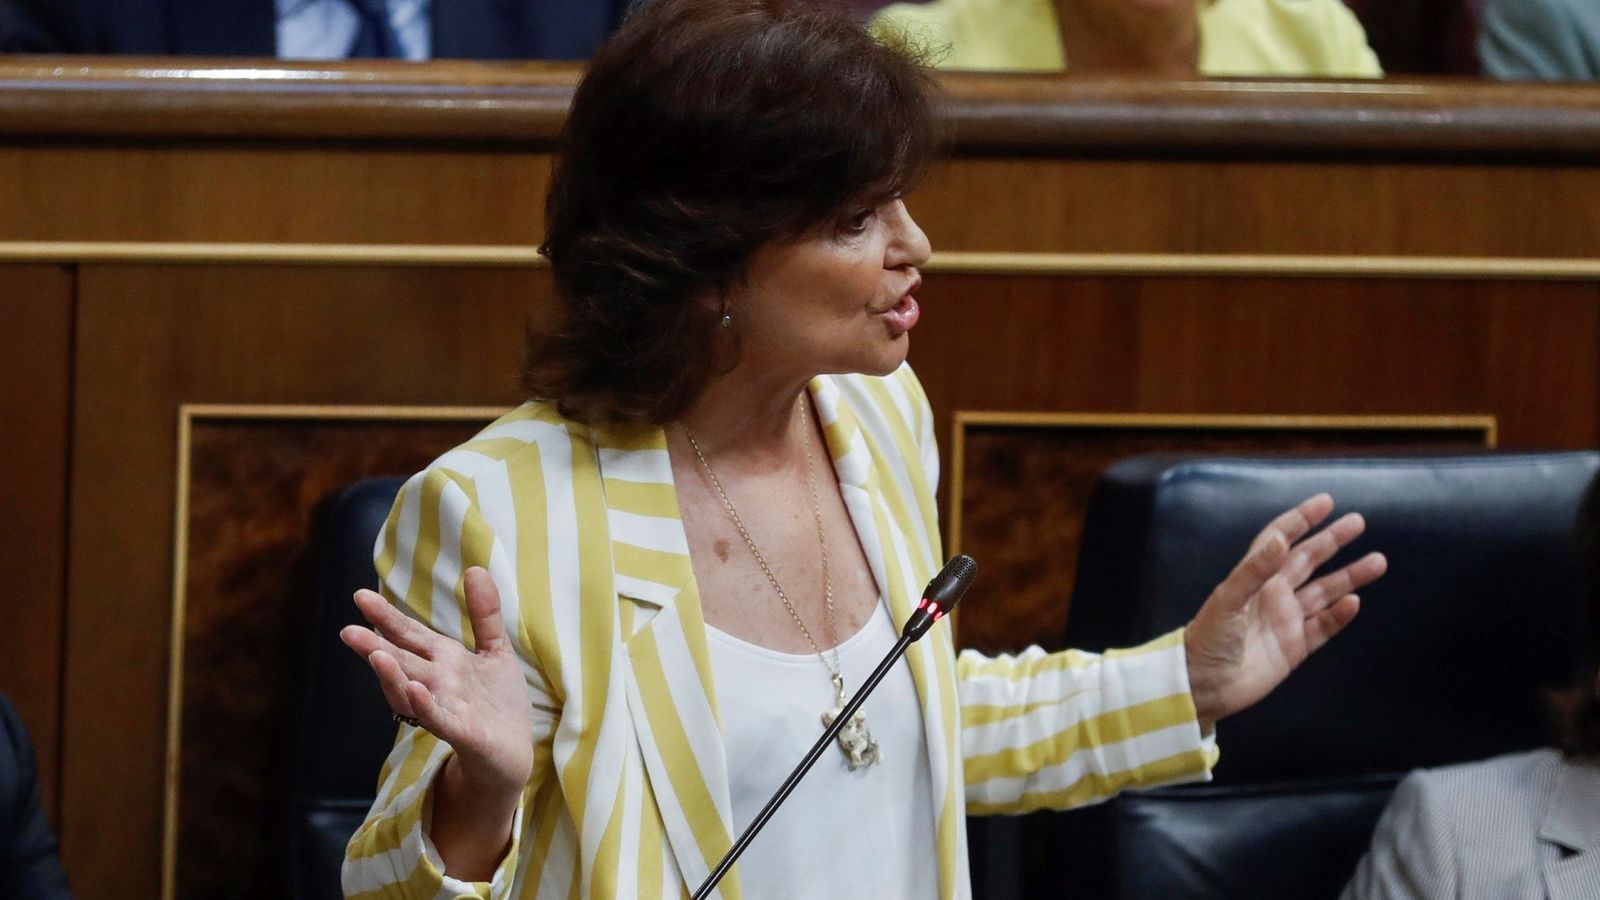 Foto: La vicepresidenta del gobierno Carmen Calvo contesta al diputado de ERC, Joan Tardà, durante su intervención en el Congreso de los Diputados. (EFE)